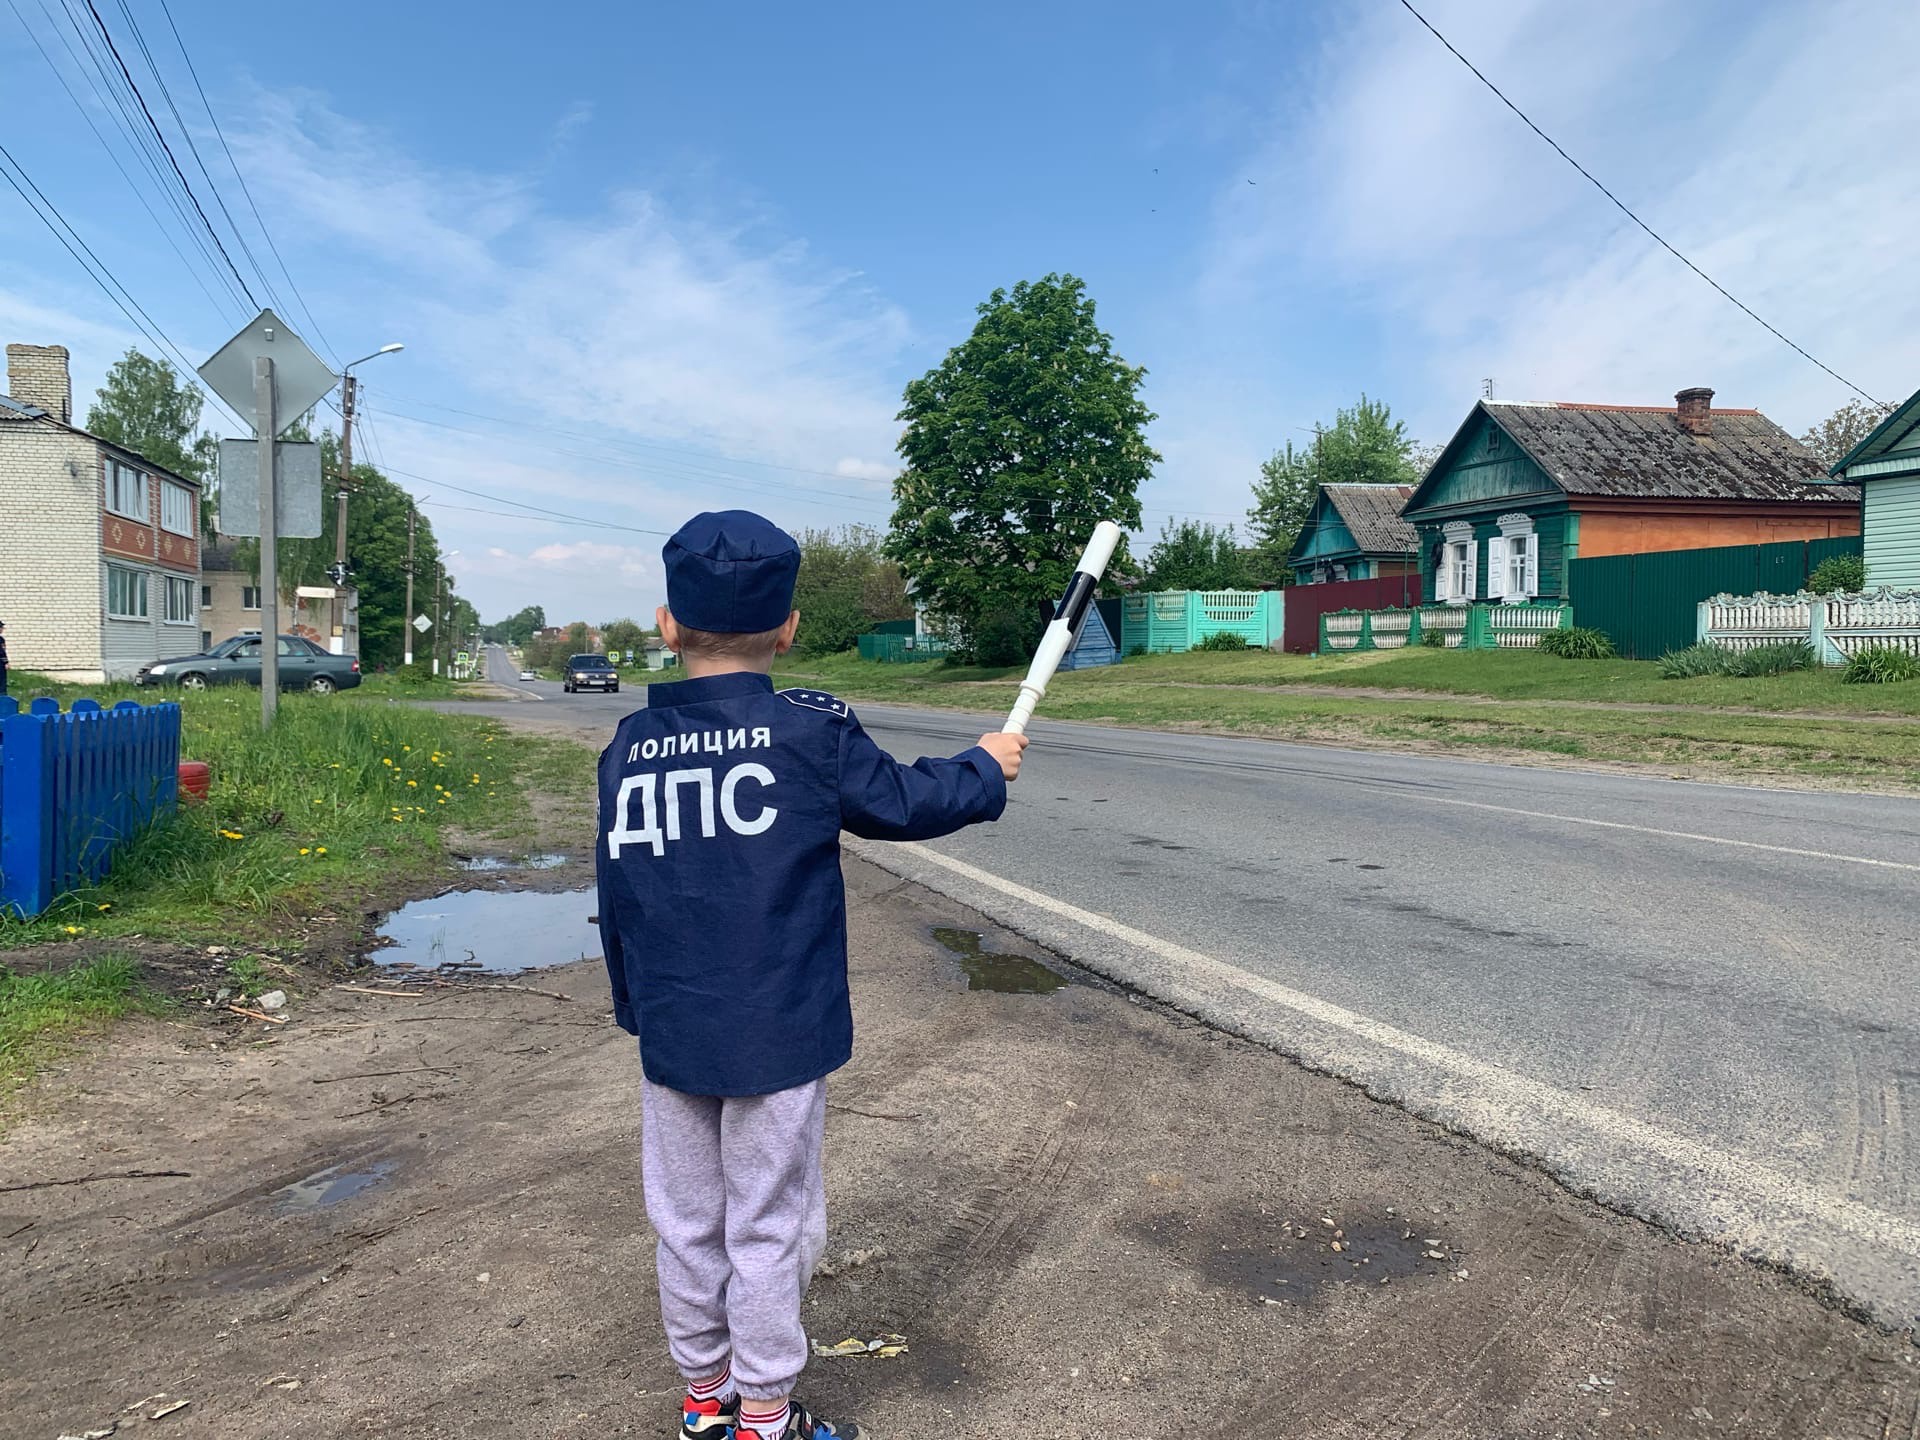 Бригада юных патрульных вышла на улицу села в Новозыбковском районе